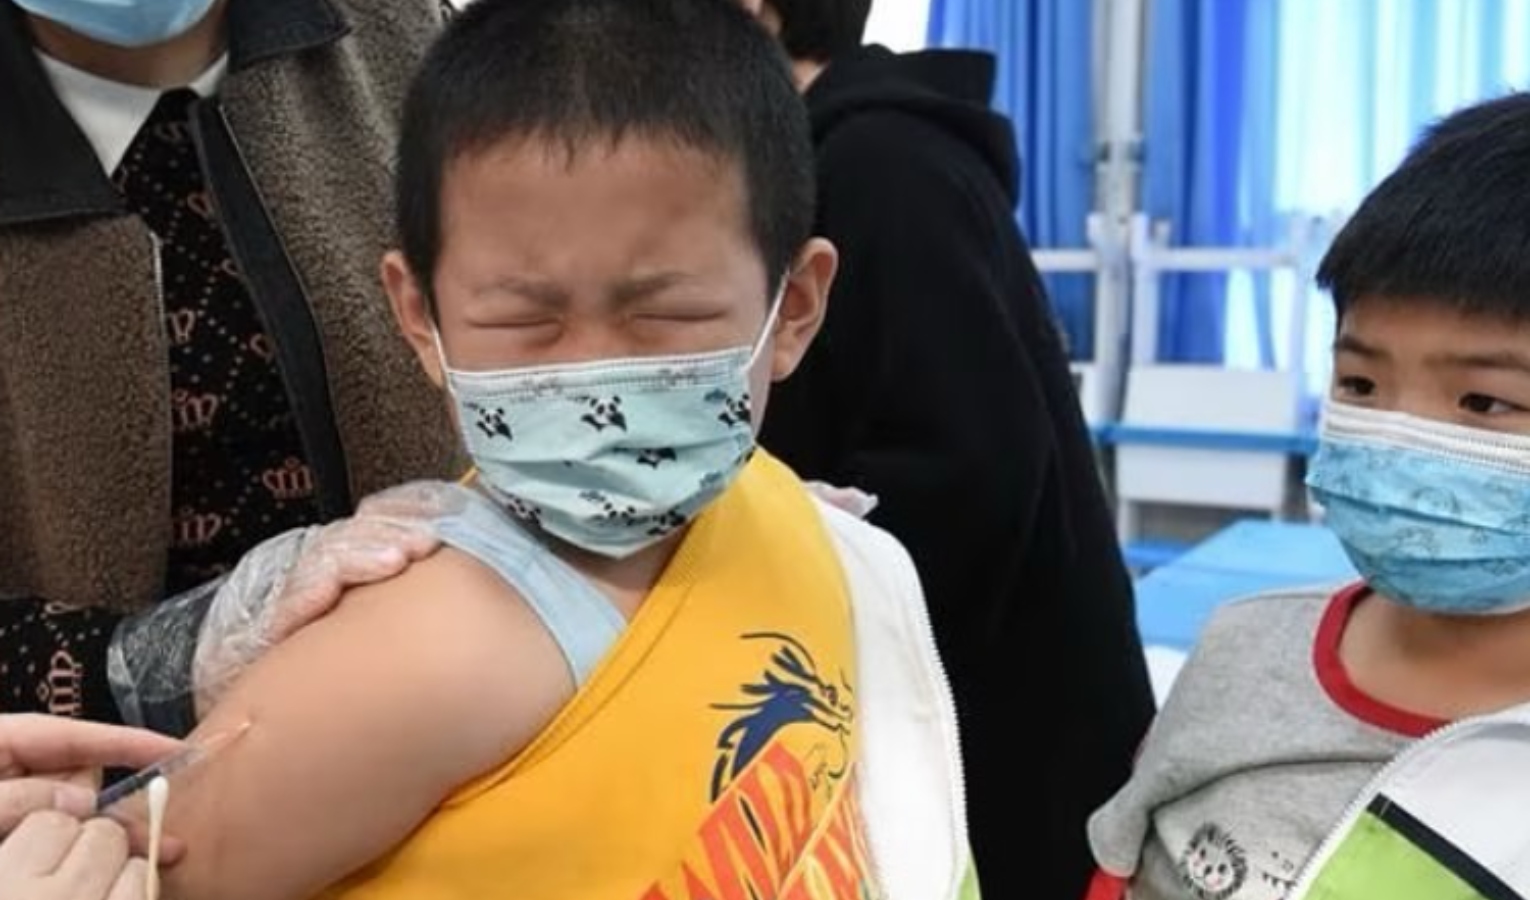 Polmonite nei bambini in Cina, Bassetti: 